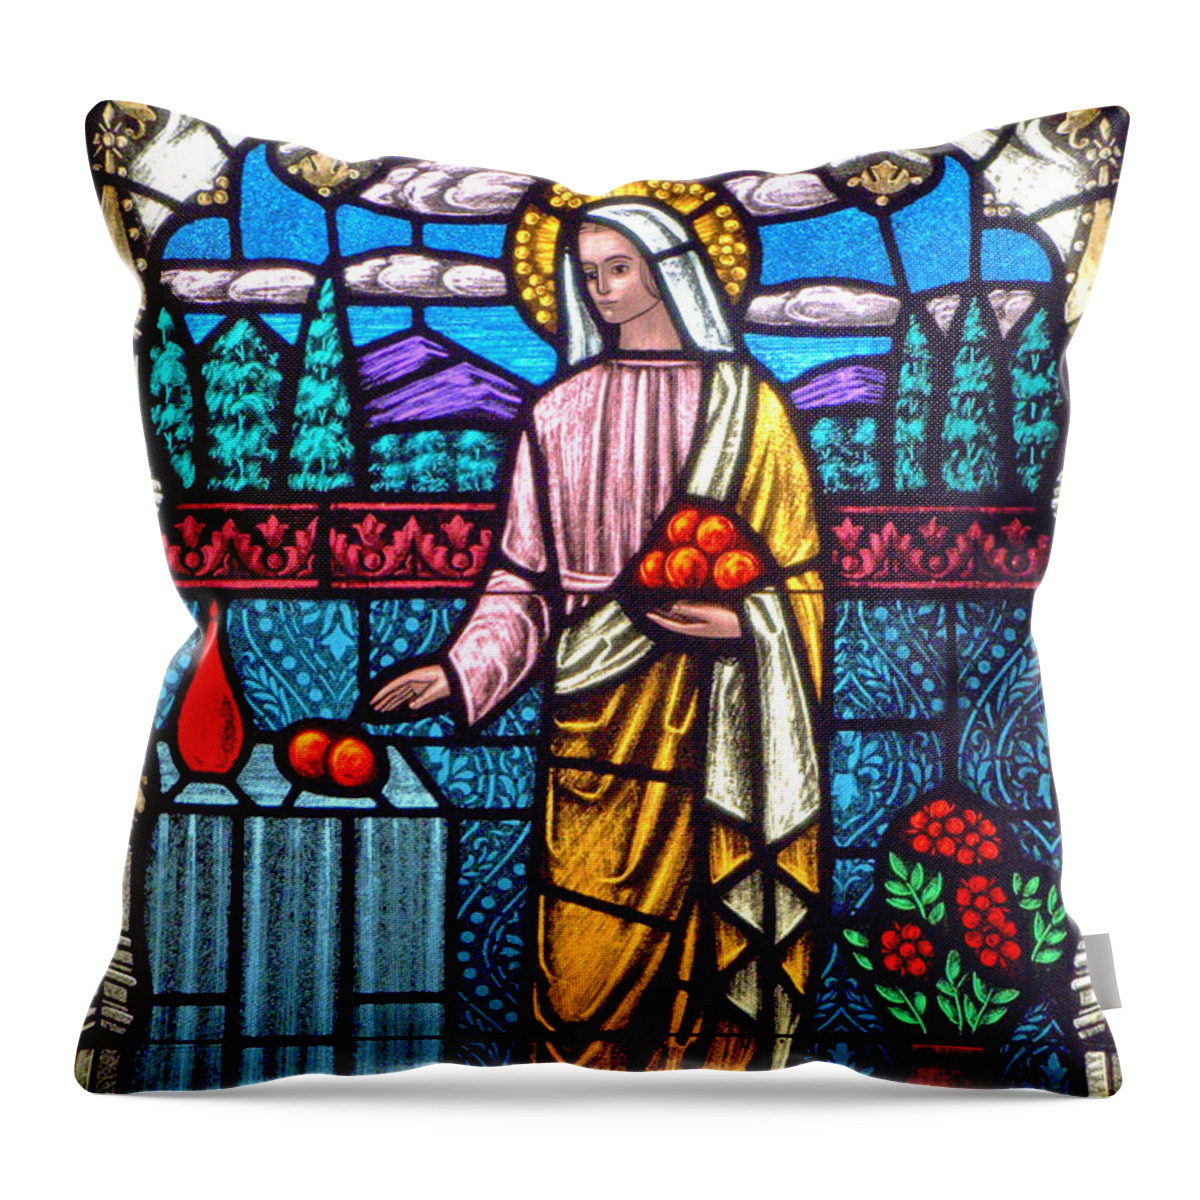 Saint Martha Throw Pillow featuring the photograph Saint Martha by Munir Alawi